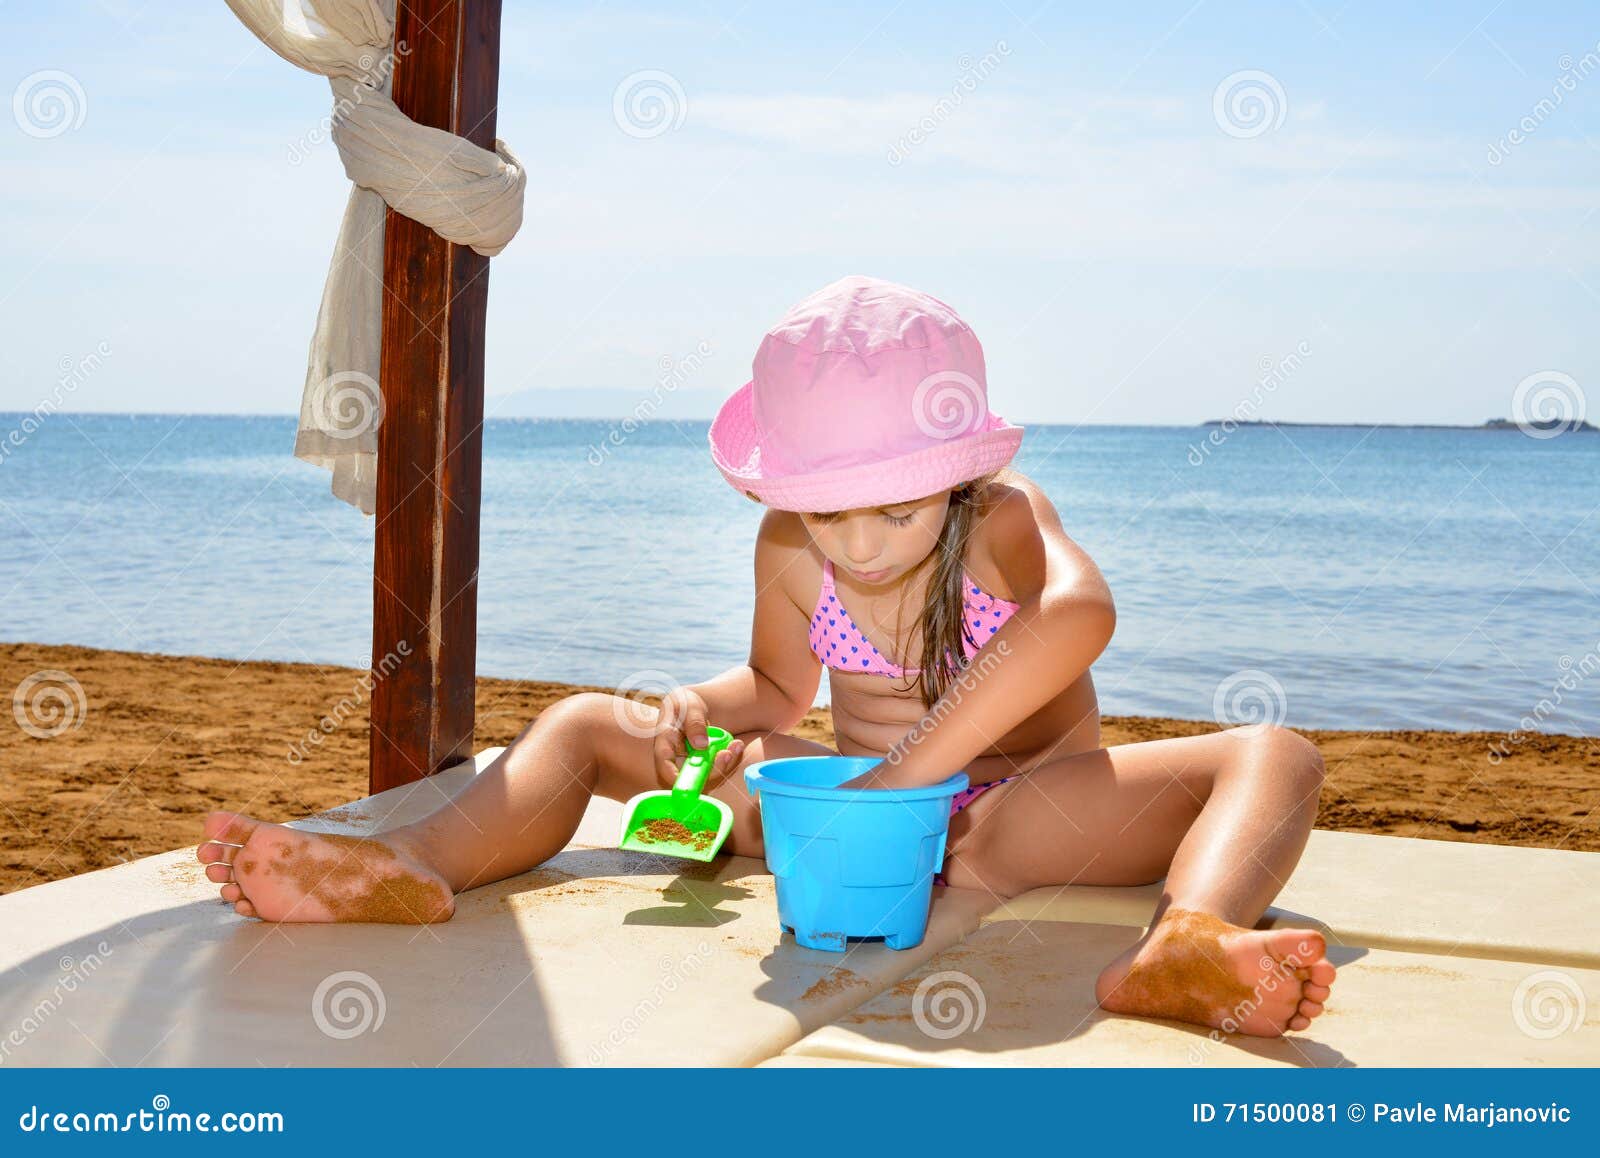 за голыми детьми на пляже фото 115